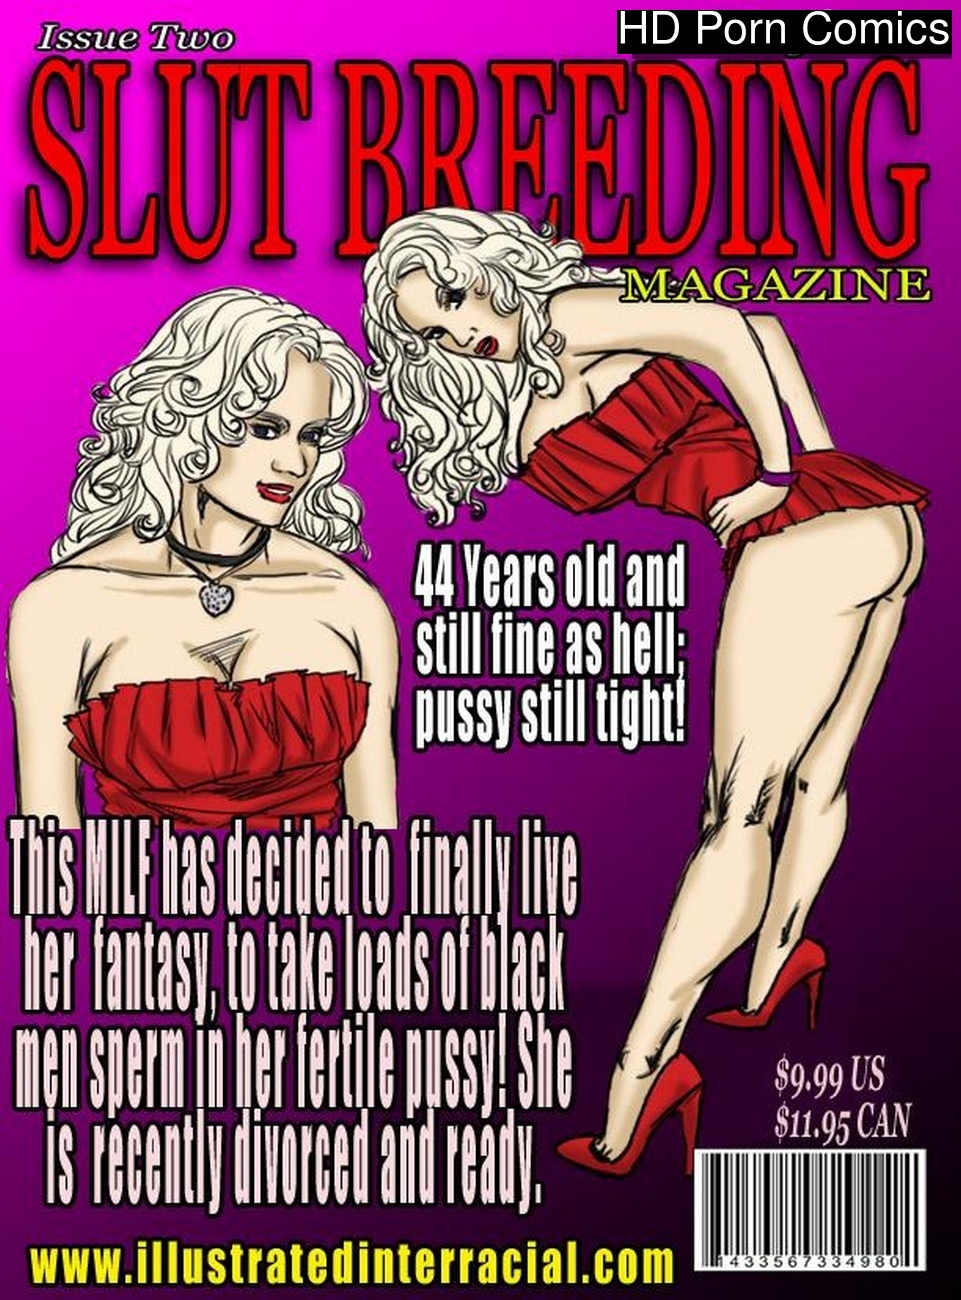 Interracial Illustrated Slut Breeding - Slut Breeding 2 comic porn | HD Porn Comics